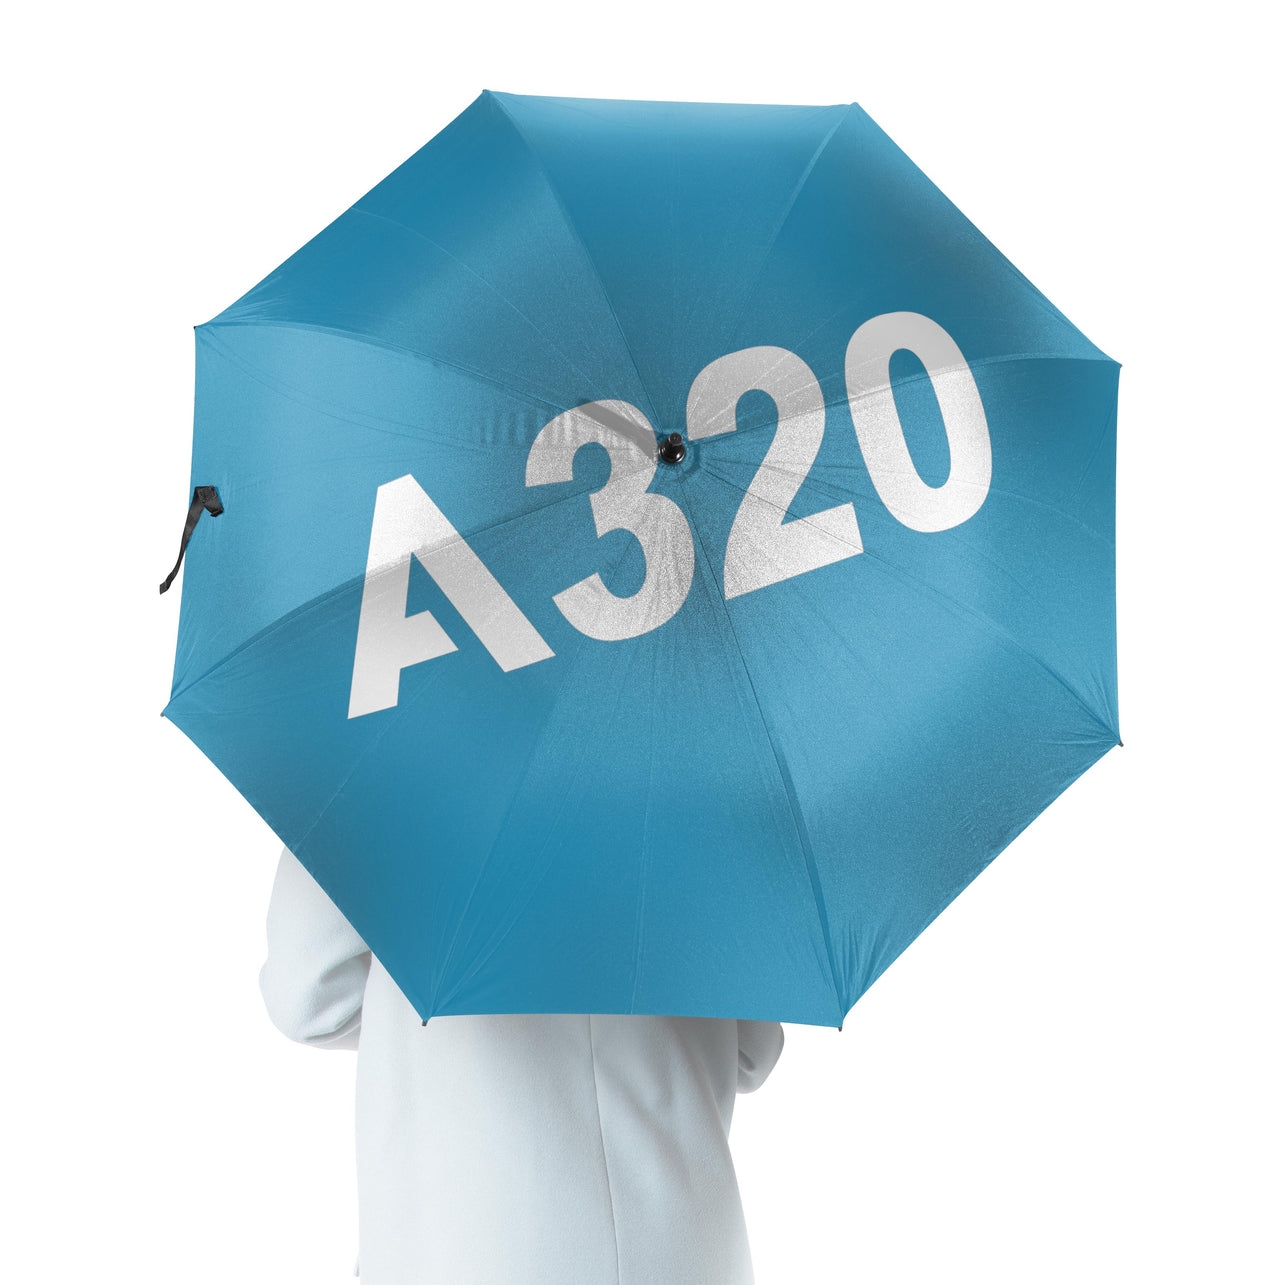 A320 Flat Text Designed Umbrella